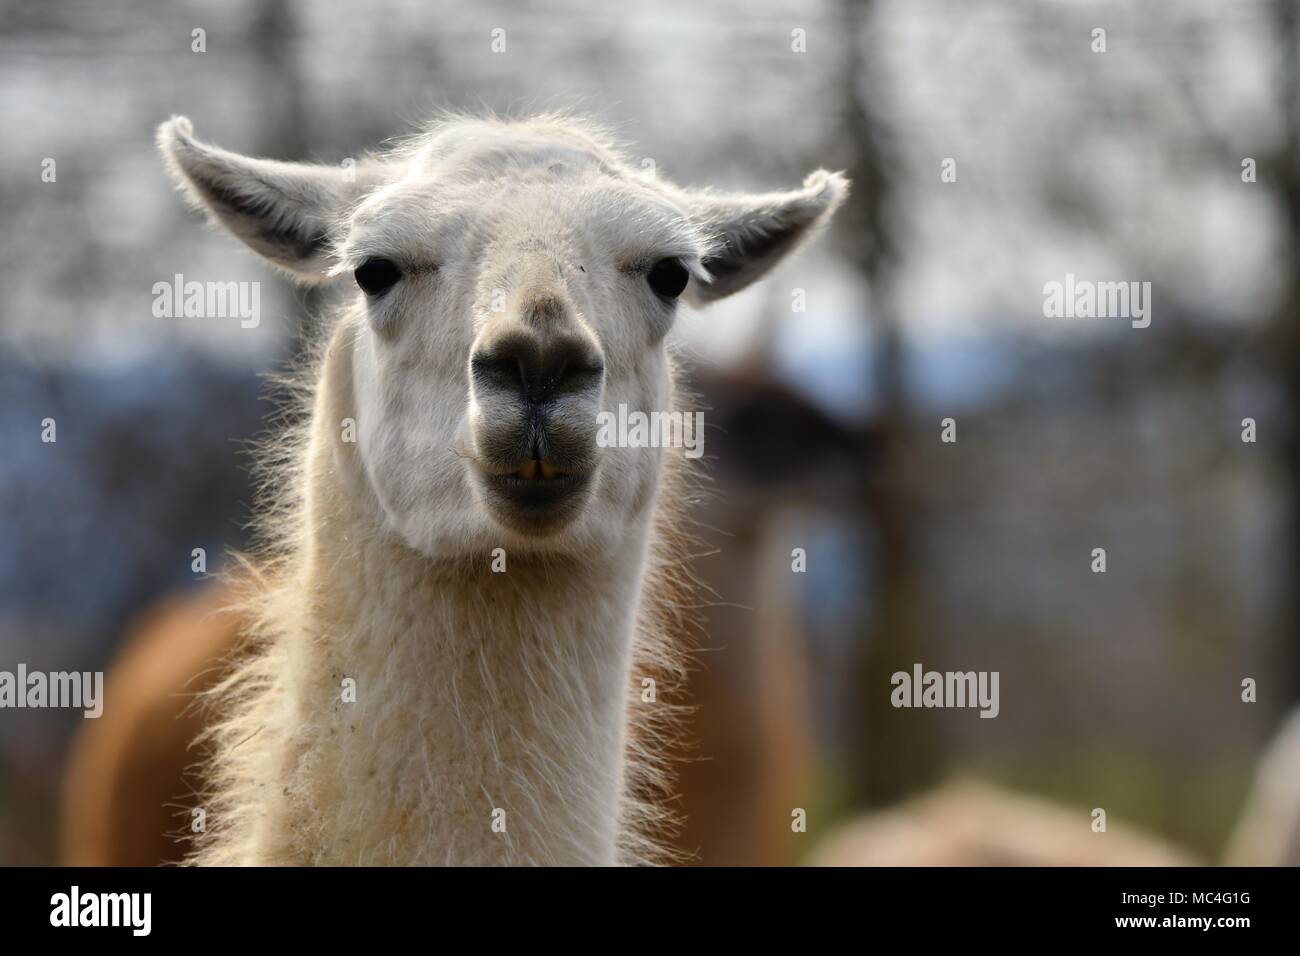 Lama glama, llama alpaca - portrait of cute llamas Stock Photo - Alamy